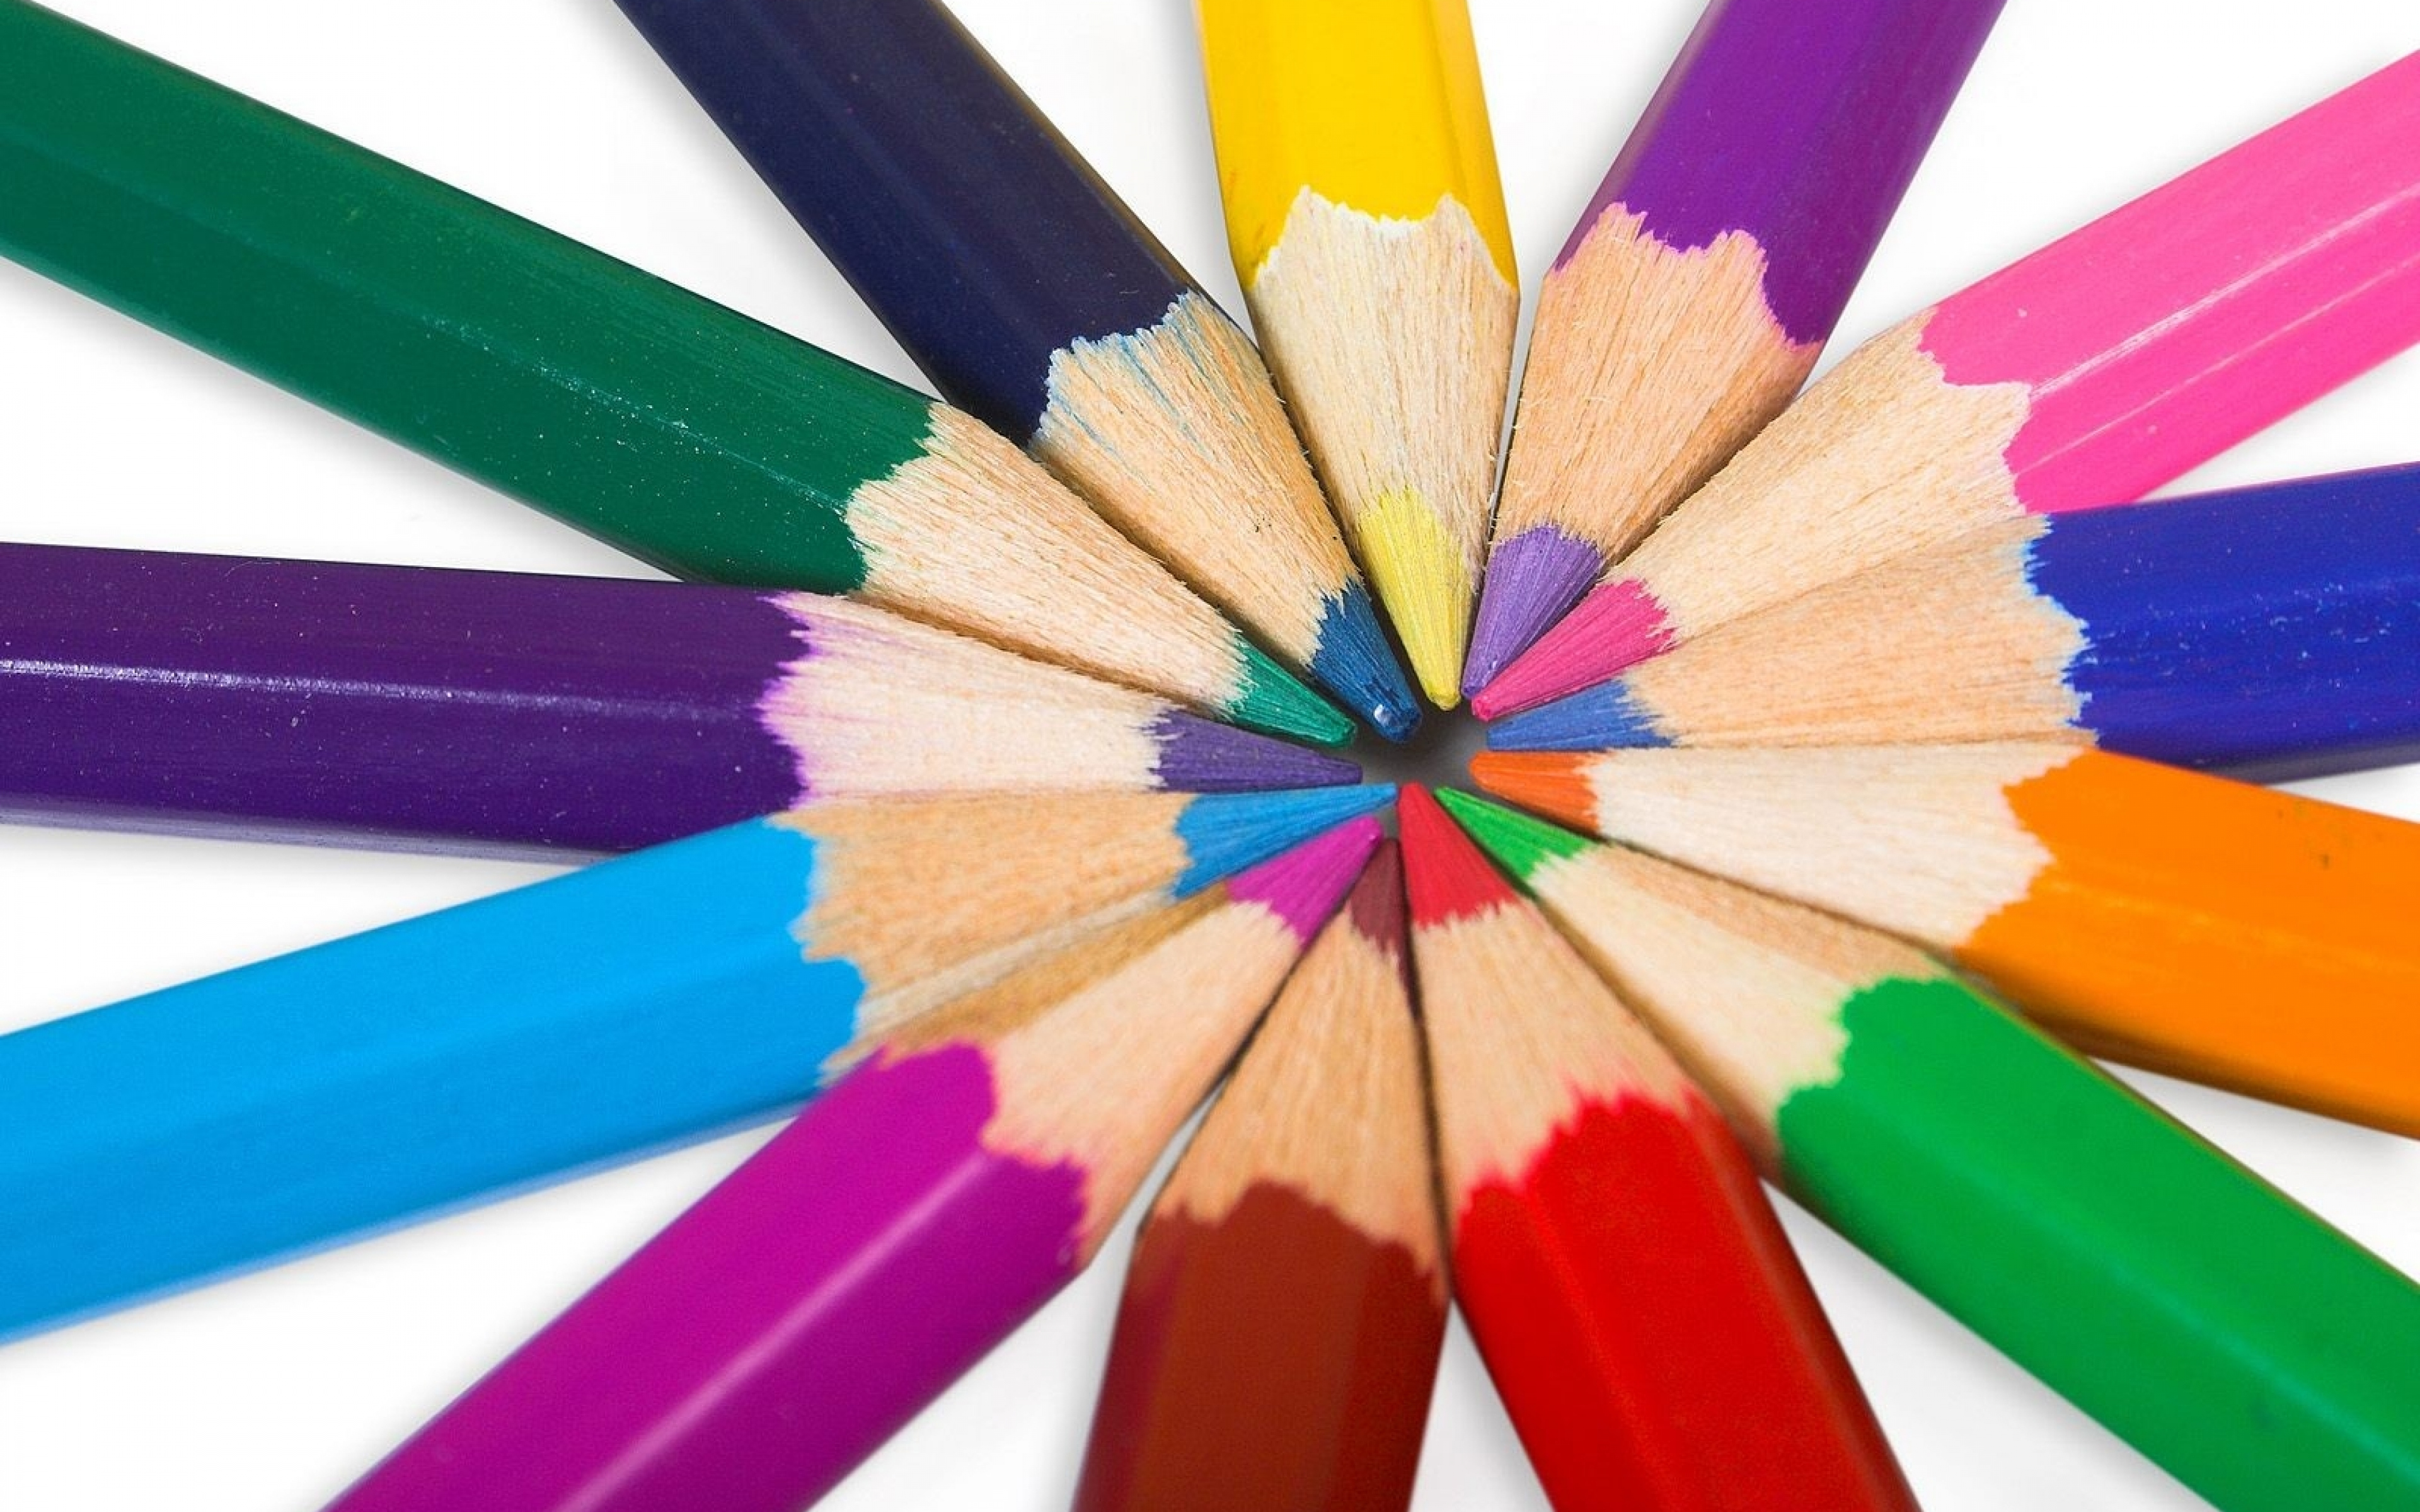 Цветной предмет. Карандаши цветные. Цвета карандашей. Разные карандаши. Карандаши разных цветов.